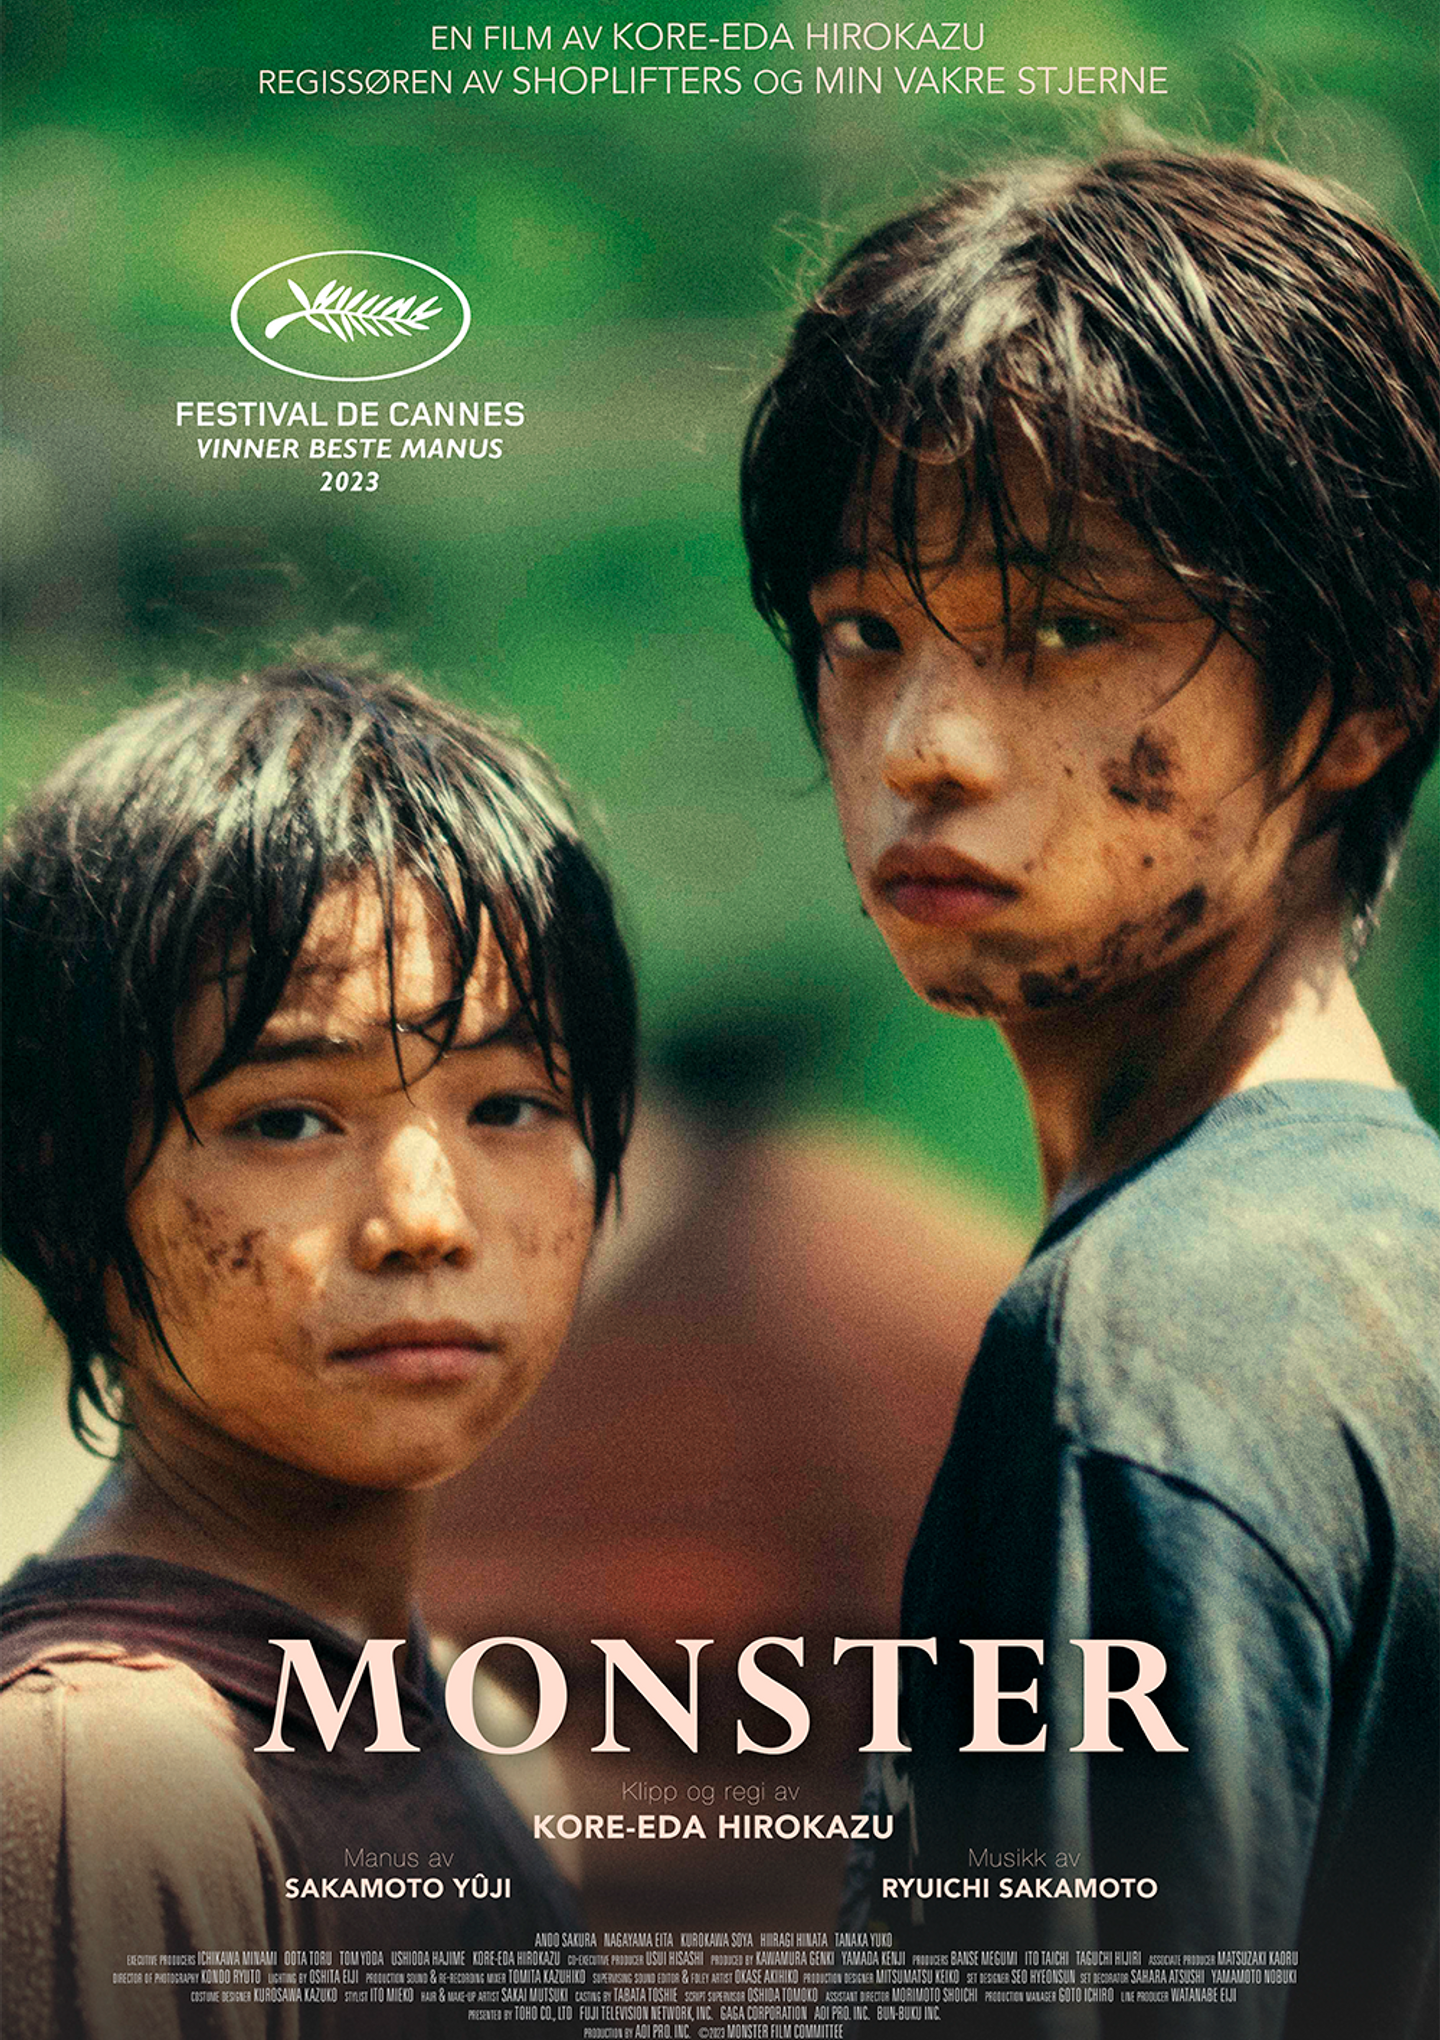 Plakat for 'Monster'